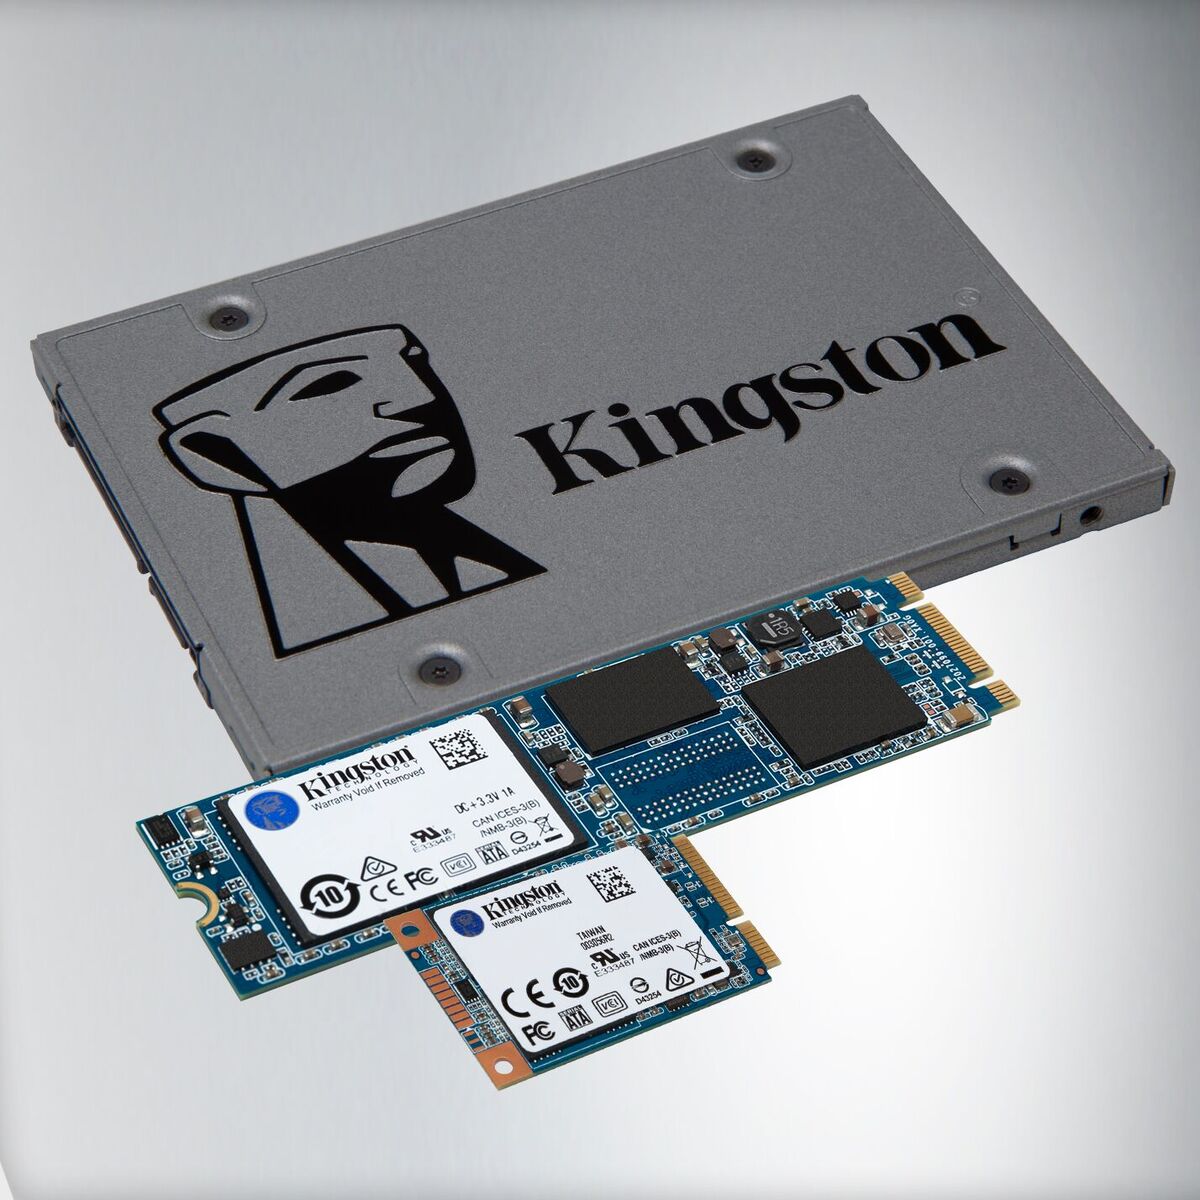 Les disques durs SSD sont une solution pratique et performante pour votre ordinateur portatif